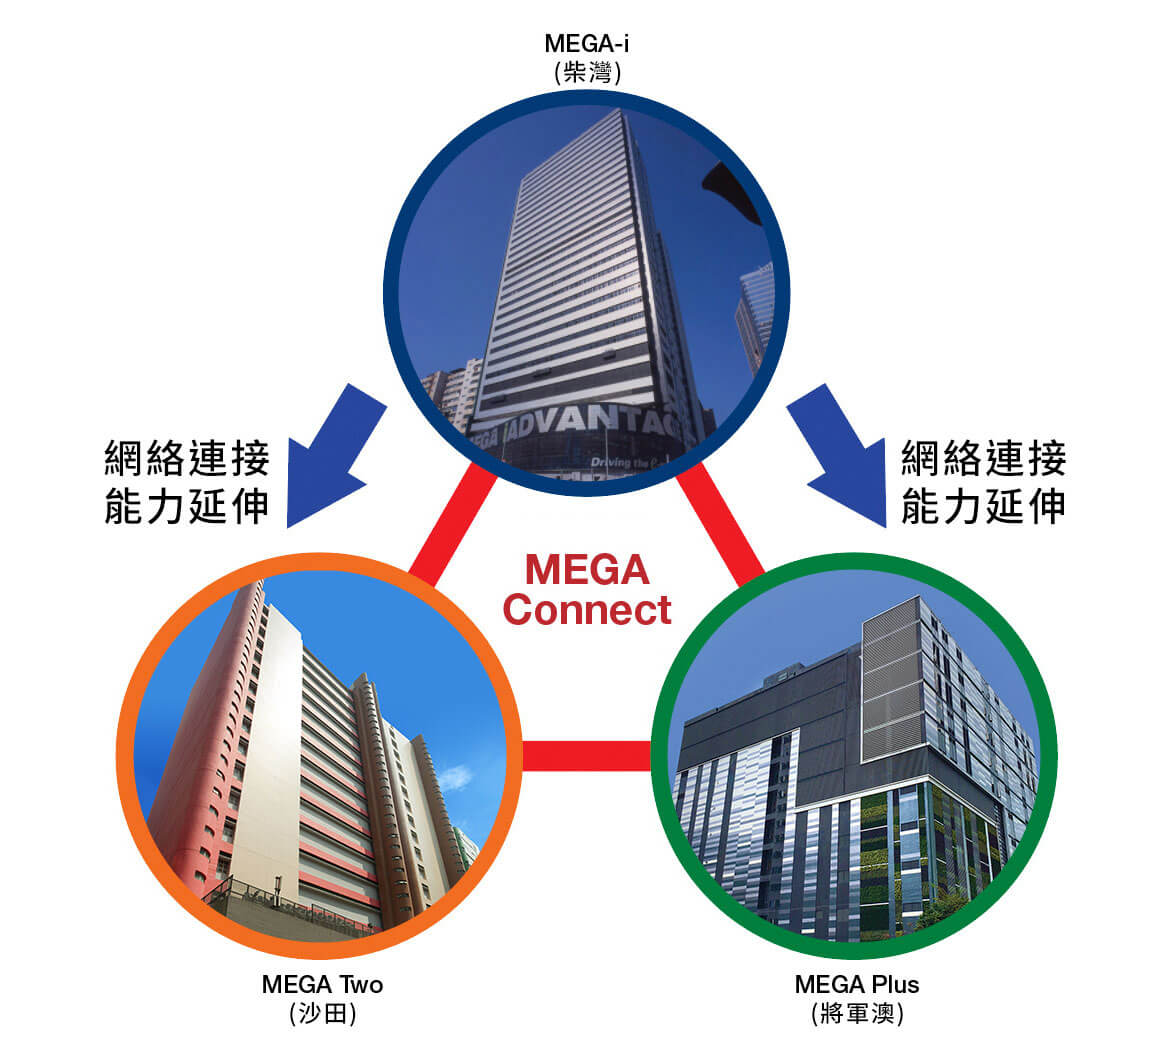 新意網MEGA-i MEGA TWO 及MEGA PLUS連成MEGA Campus香港數據中心MEGA Campus